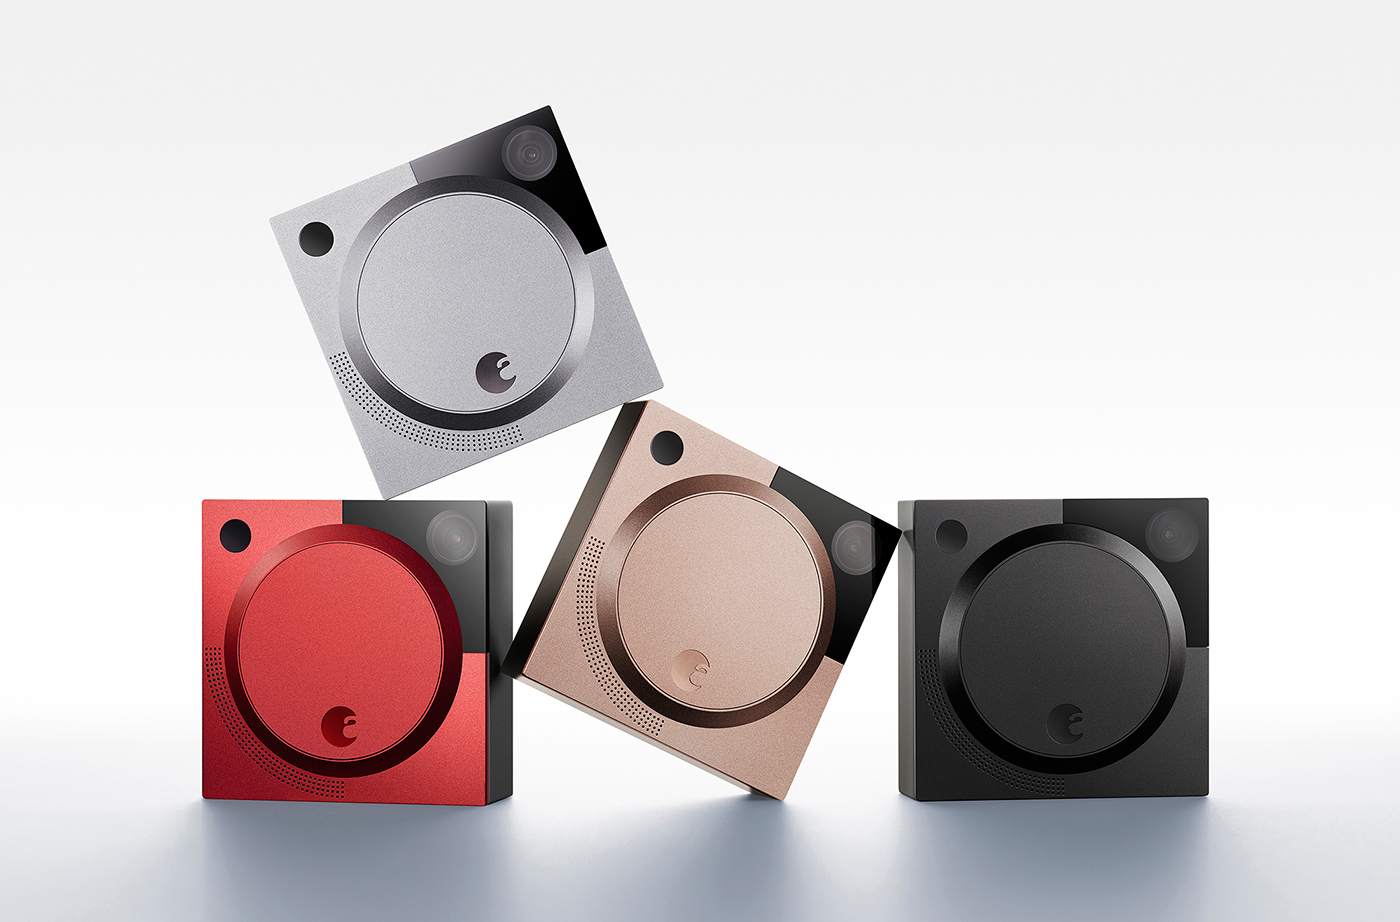 Industrial Design Process of August Smart Doorbell Camera